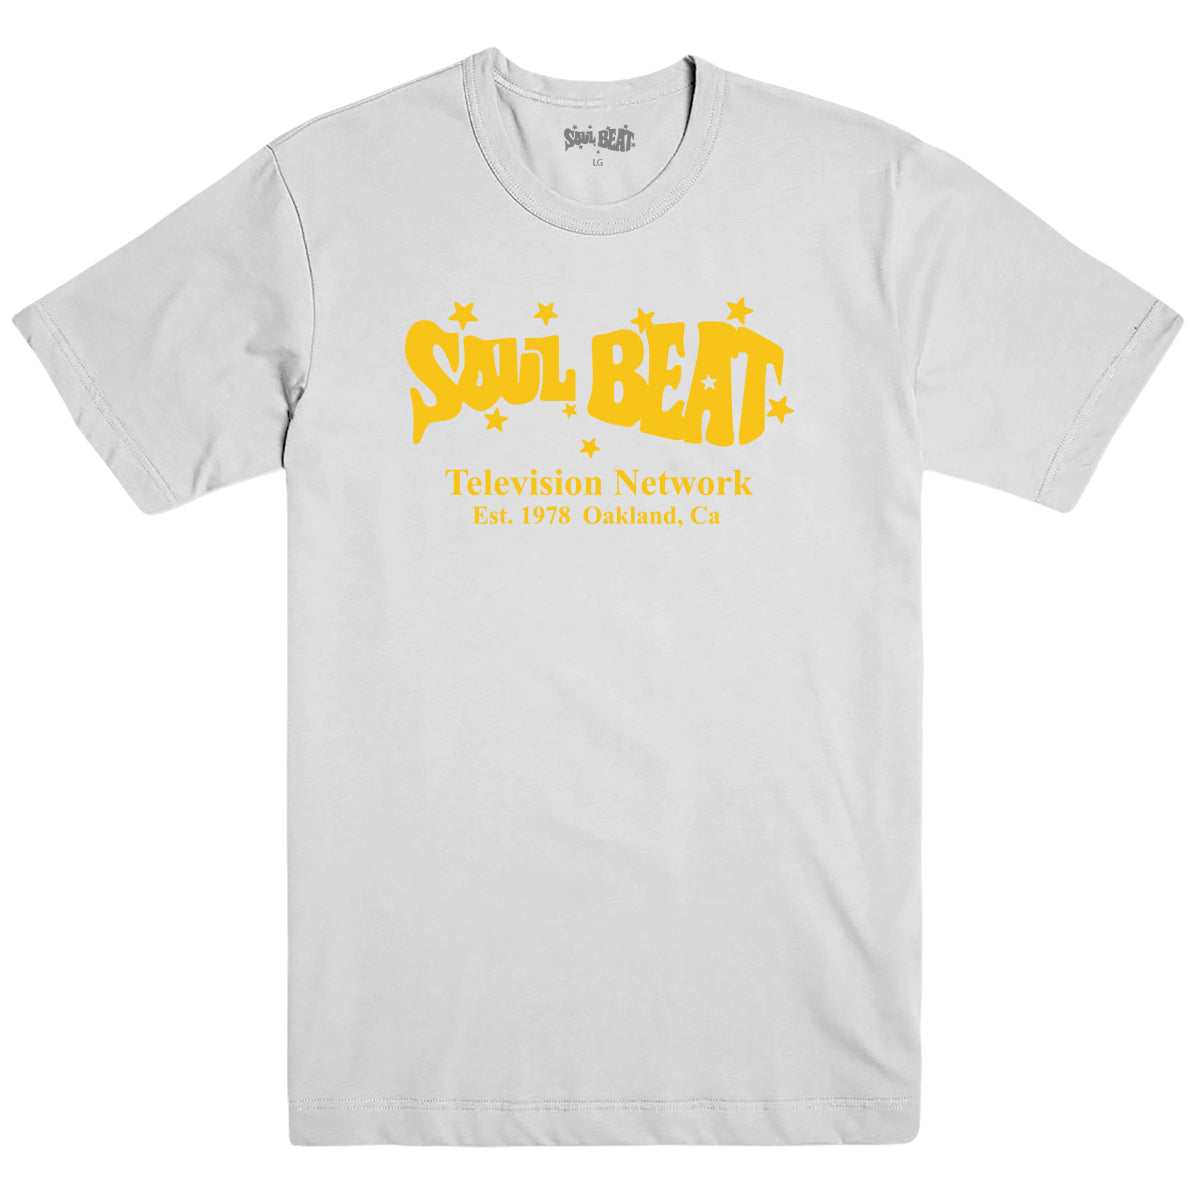 Soul Beat Est 1978 T-Shirt - White w/yellow